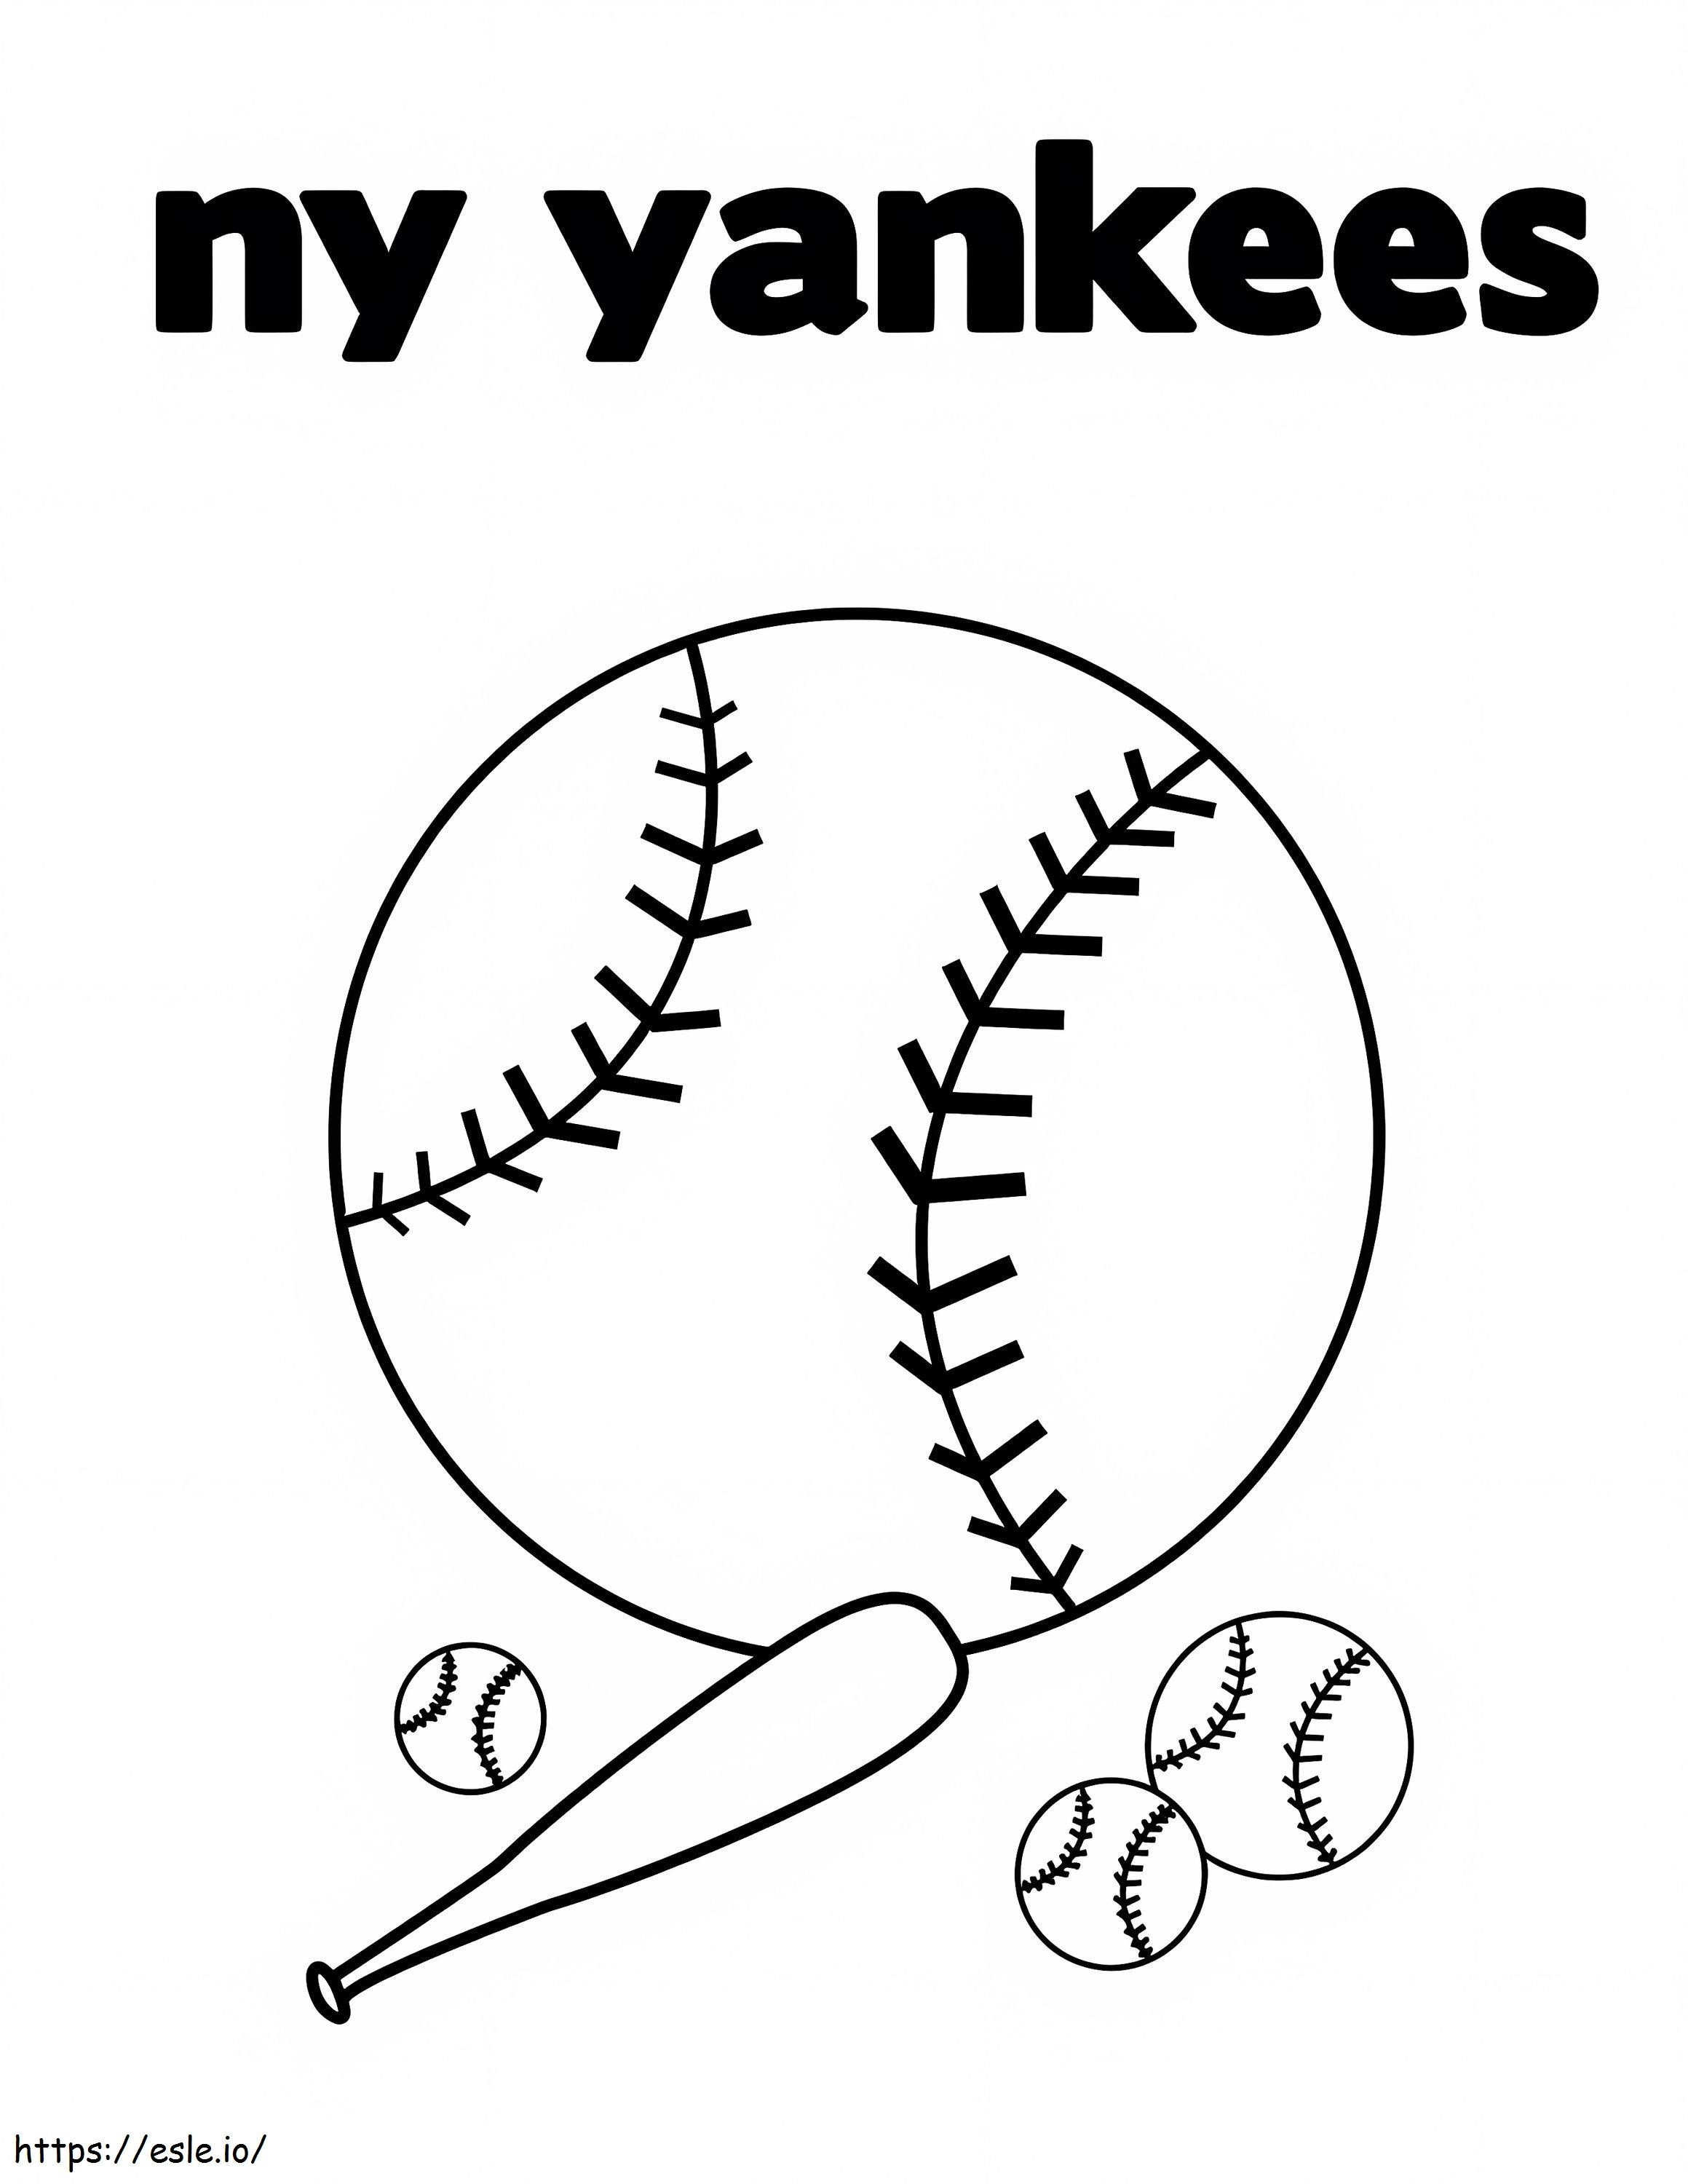 Coloriage Yankees de New York 3 à imprimer dessin